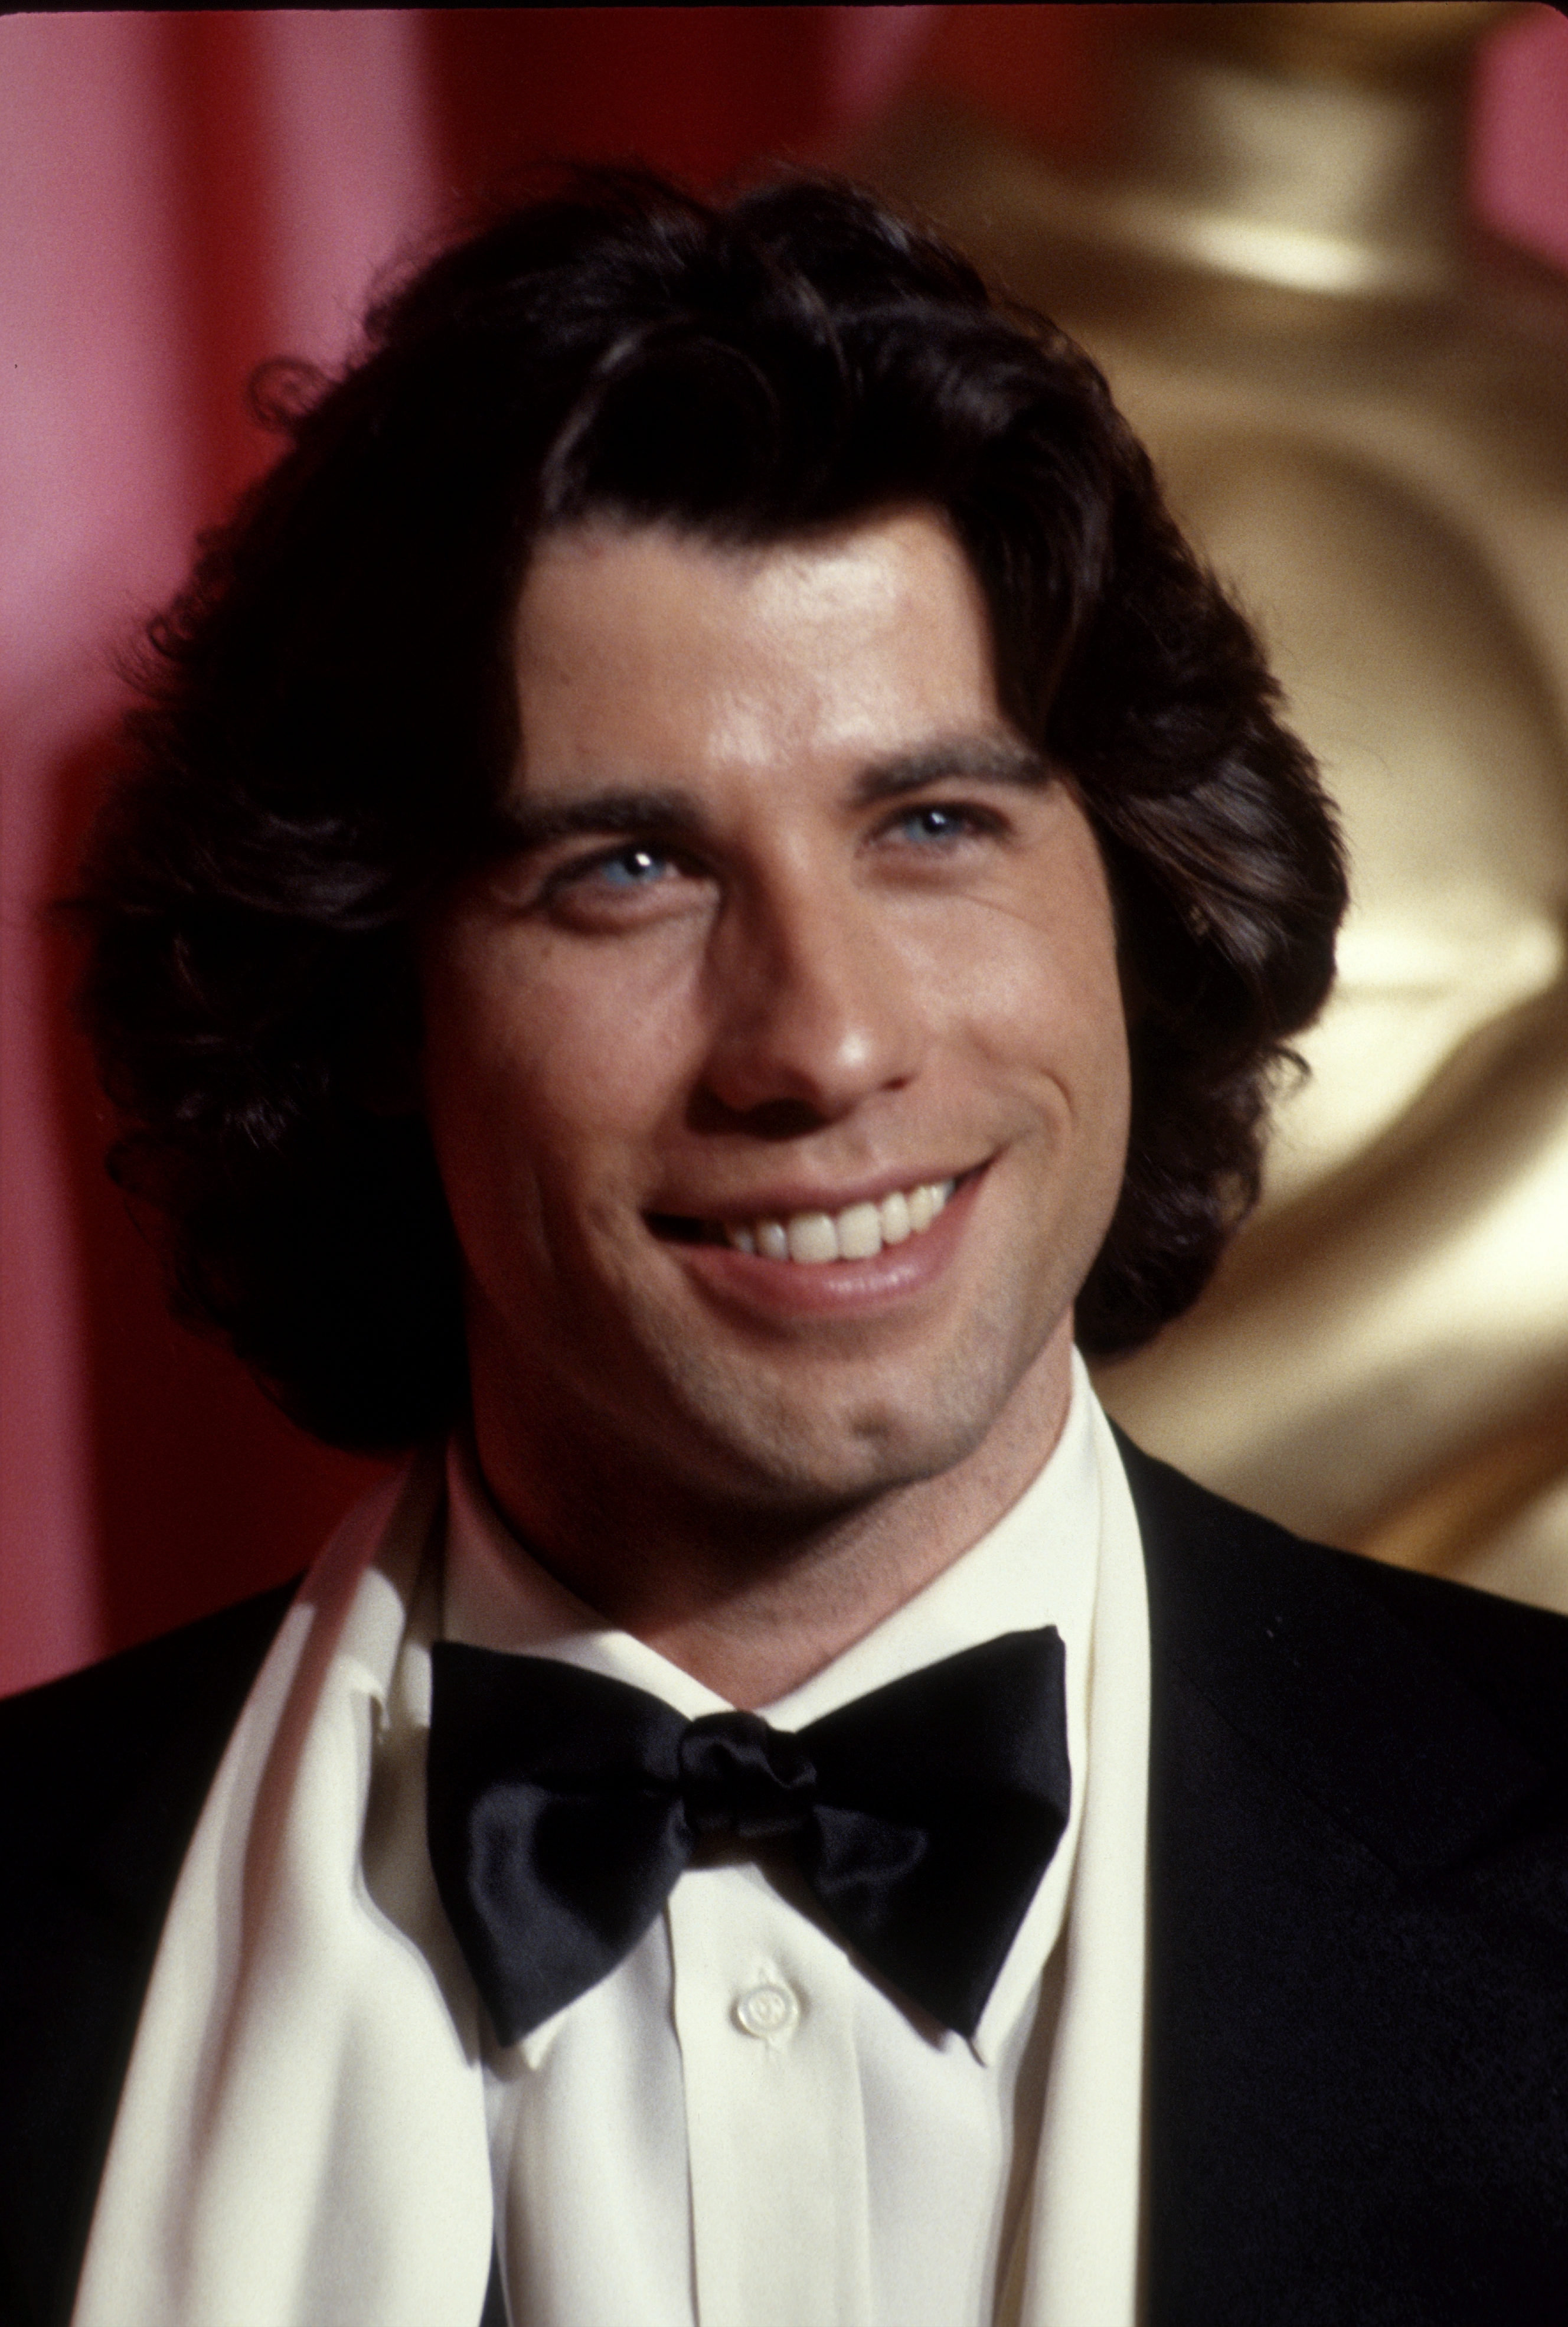 John Travolta en los Premios de la Academia hacia 1978 en Los Ángeles. | Fuente: Getty Images